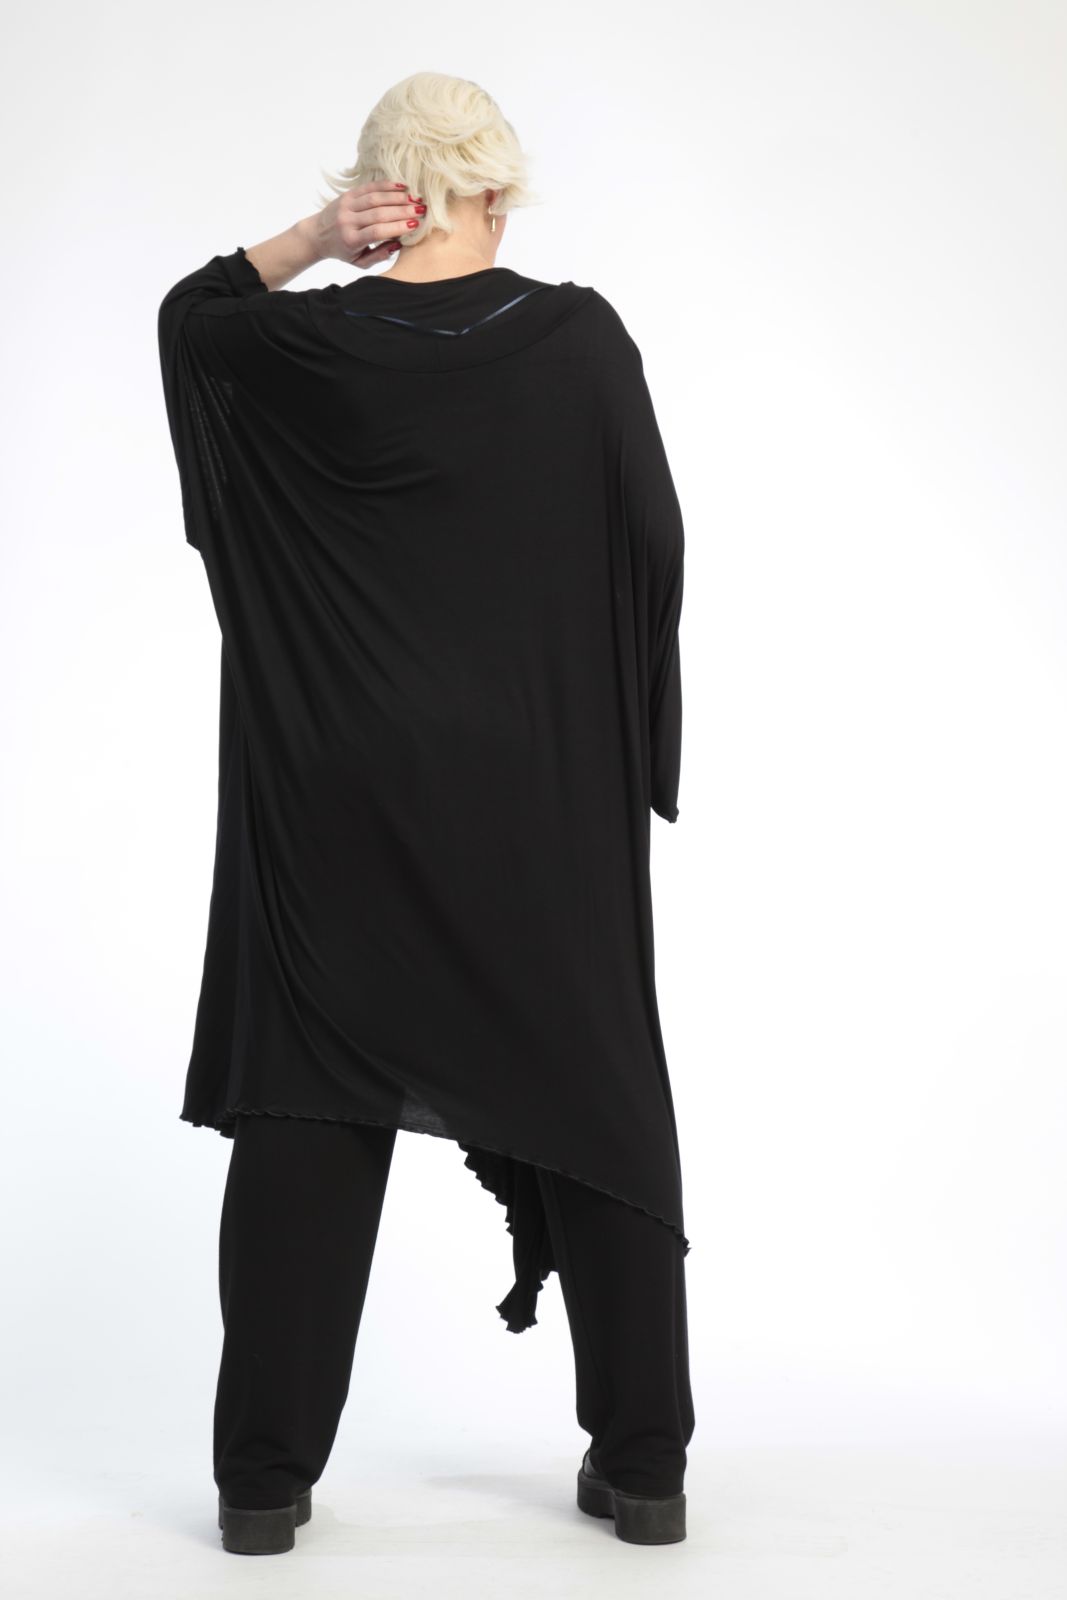 Alltags Kleid in A-Form aus glatter Jersey Qualität, Viskose-Basics in Schwarz